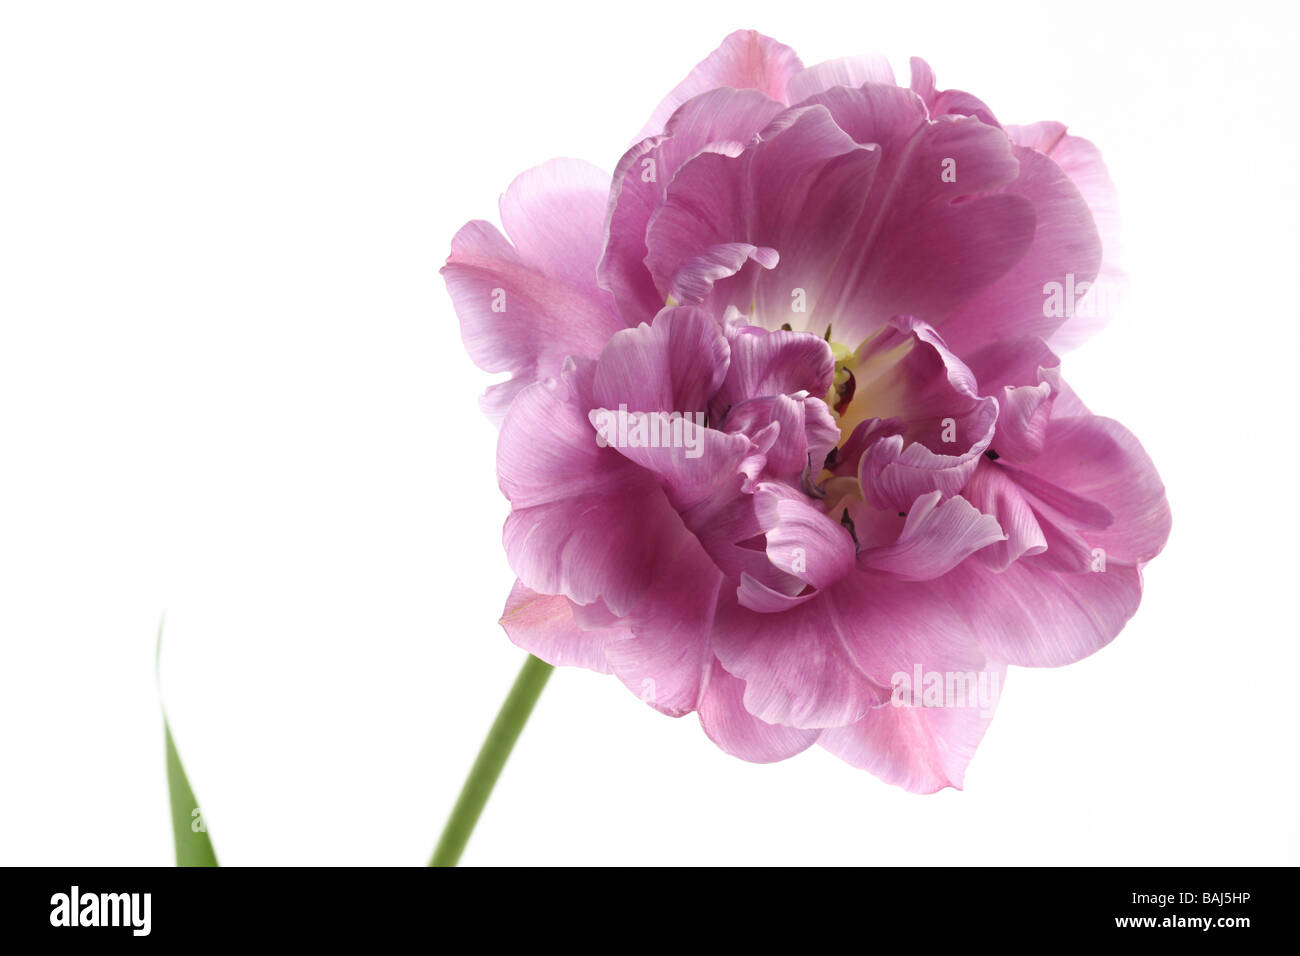 Primo piano di un tulipano tulipa lilla perfezione su sfondo bianco Foto Stock